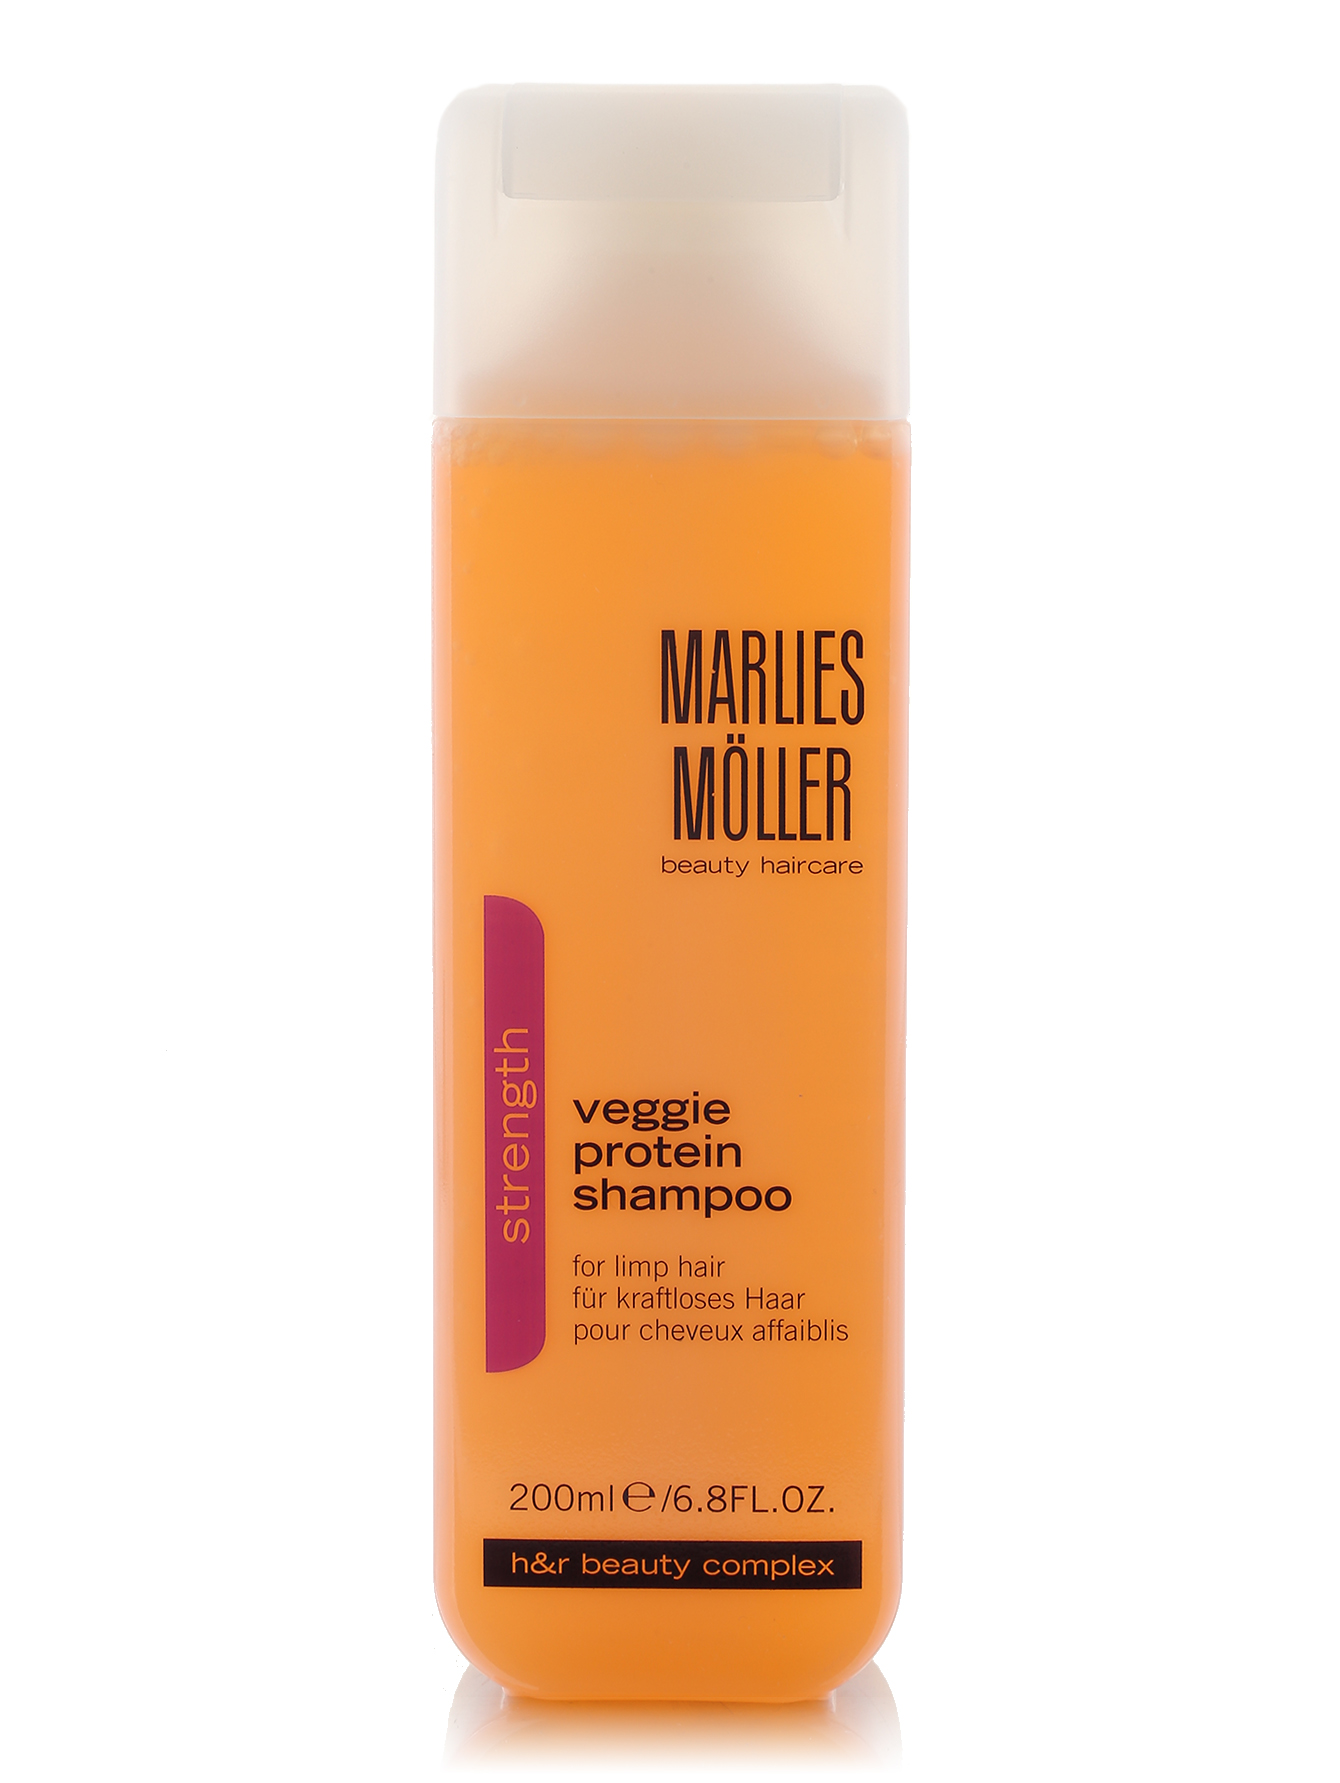  Шампунь для ослабленных волос - Veggie protein shampoo, 200ml - Общий вид